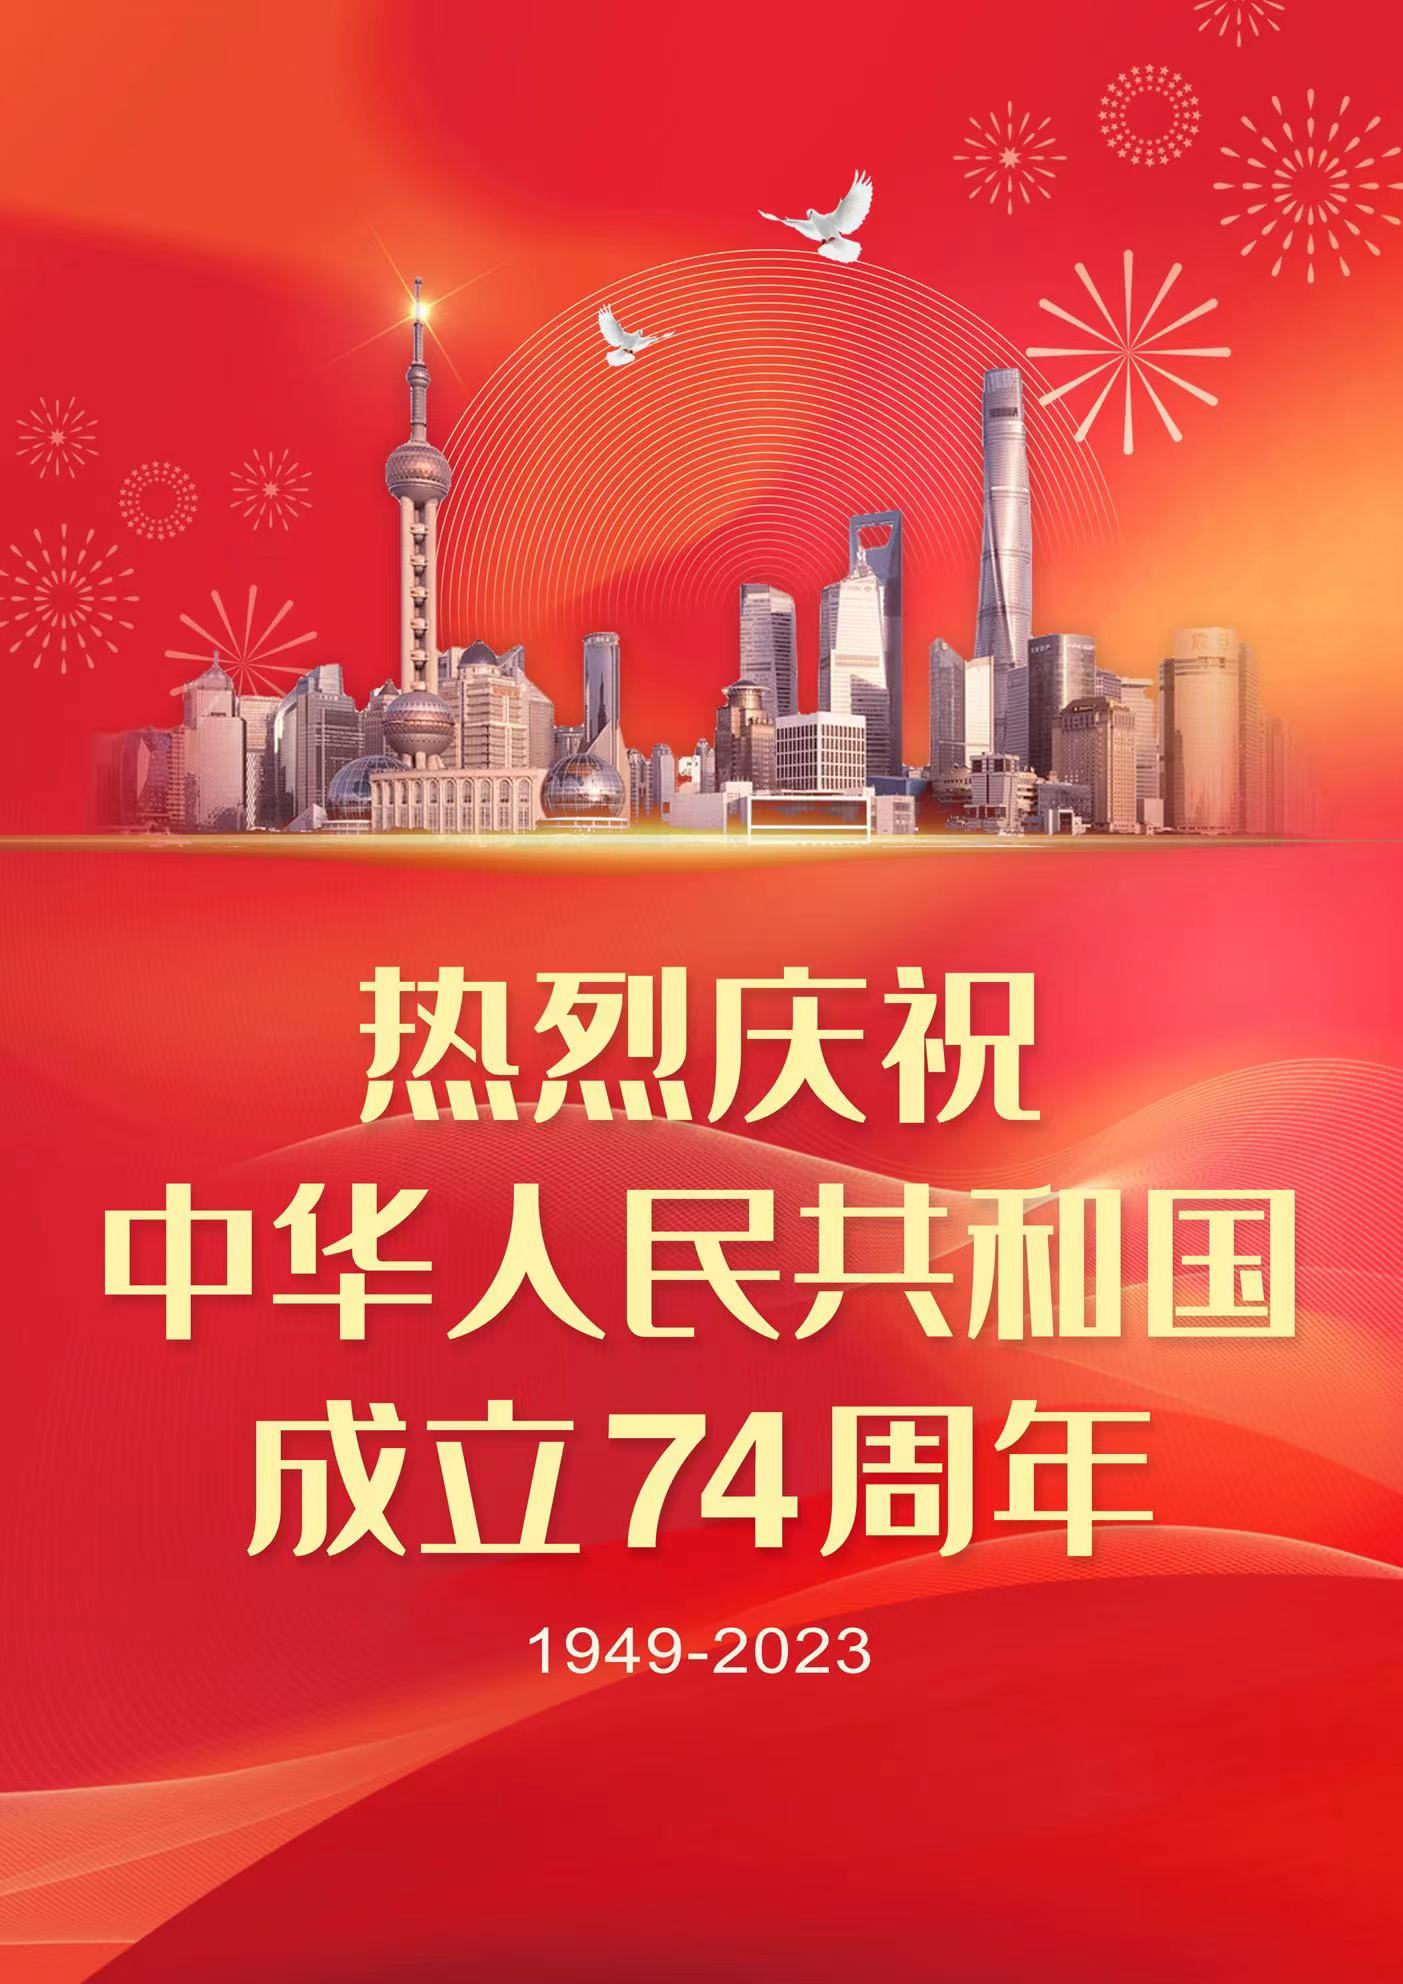 热烈庆祝中华人民共和国成立74周年！